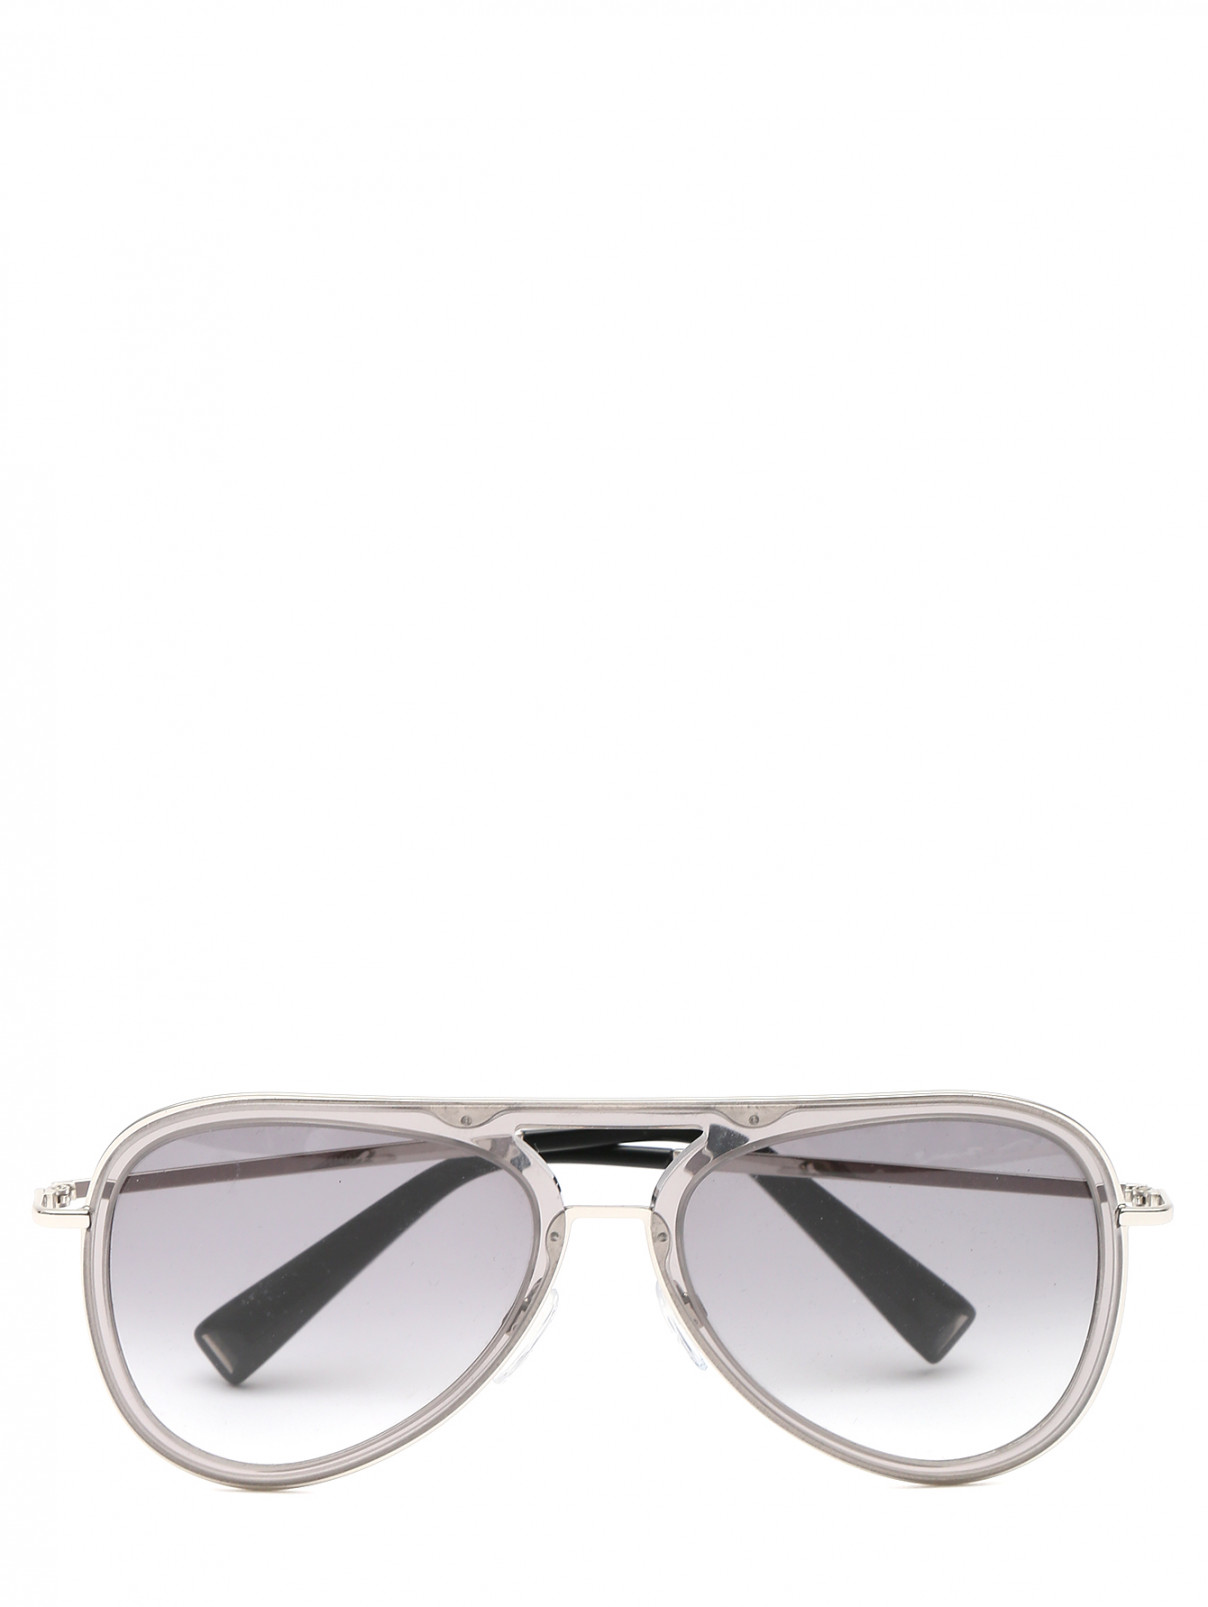 Солнцезащитные очки в оправе из металла и пластика Max Mara  –  Общий вид  – Цвет:  Серый